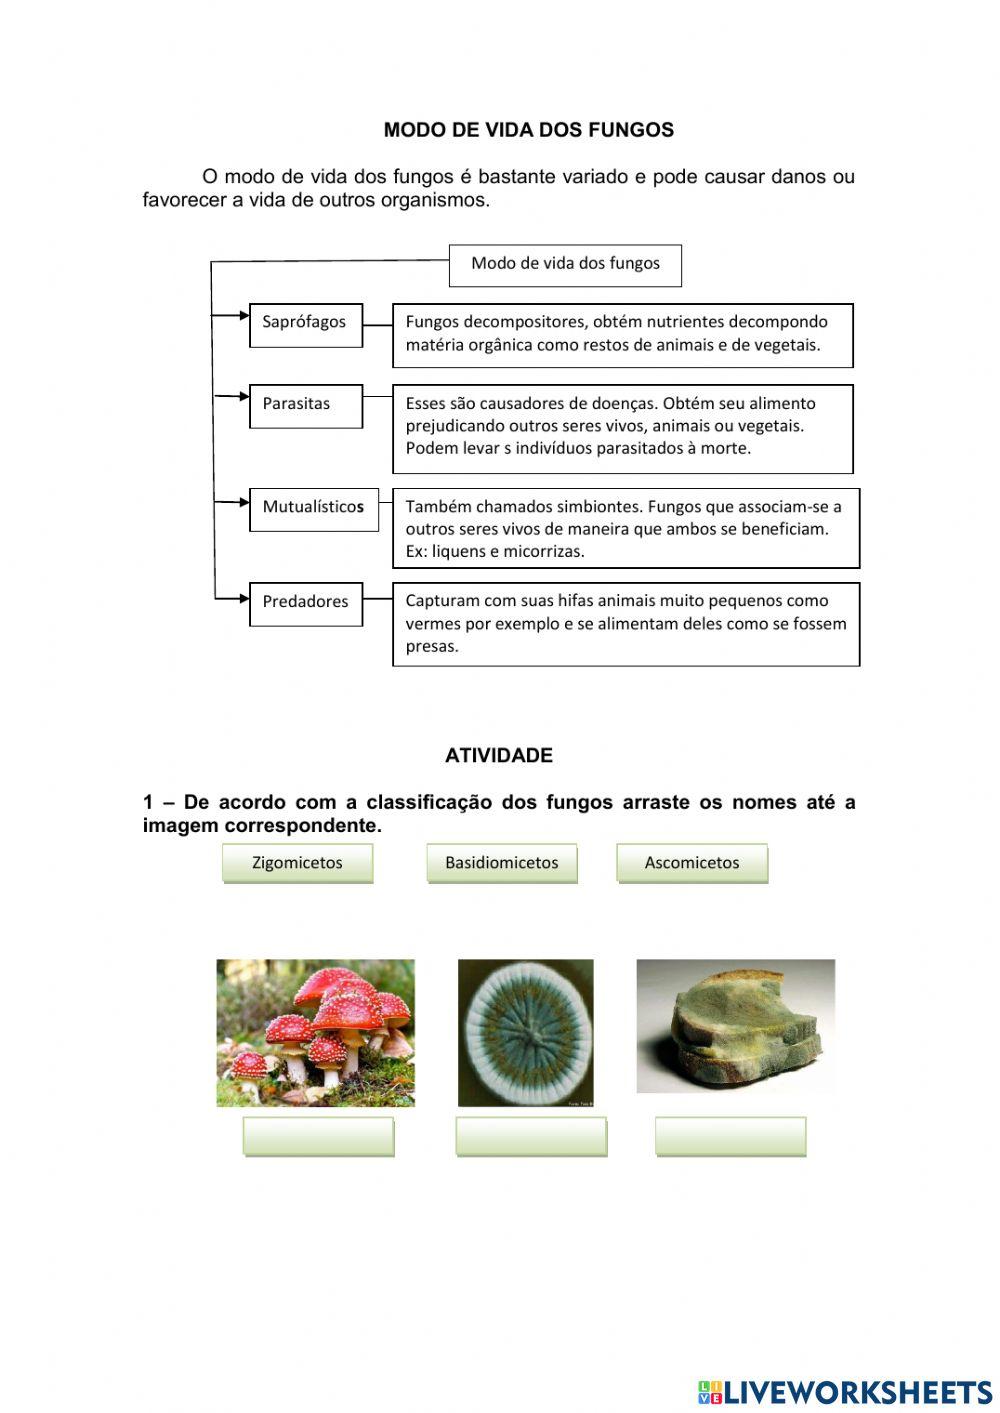 Classificação e modo de vida dos fungos